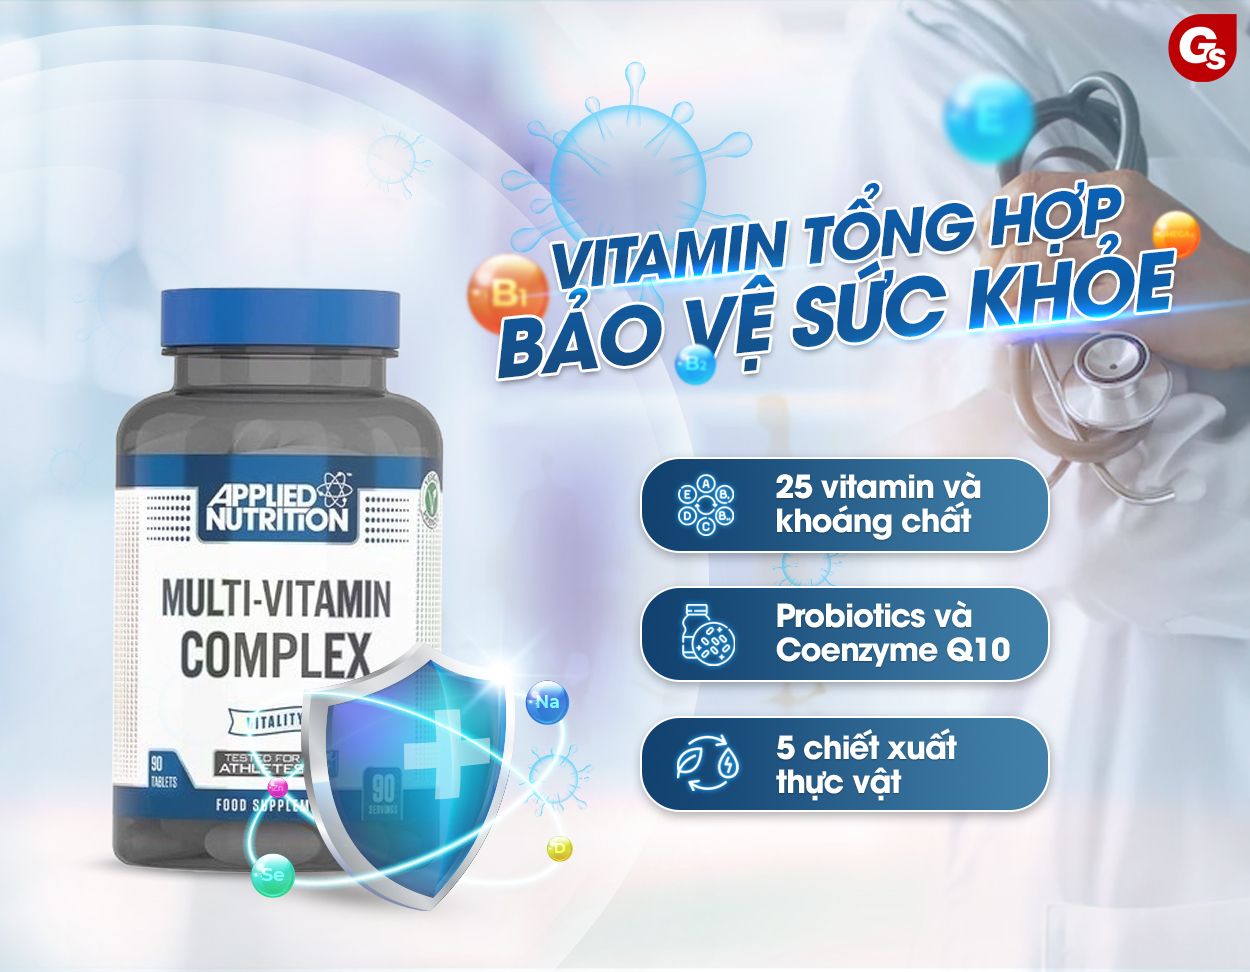 applied-nutrition-multi-vitamin-complex-ho-tro-suc-khoe-toan-dien-gymstore